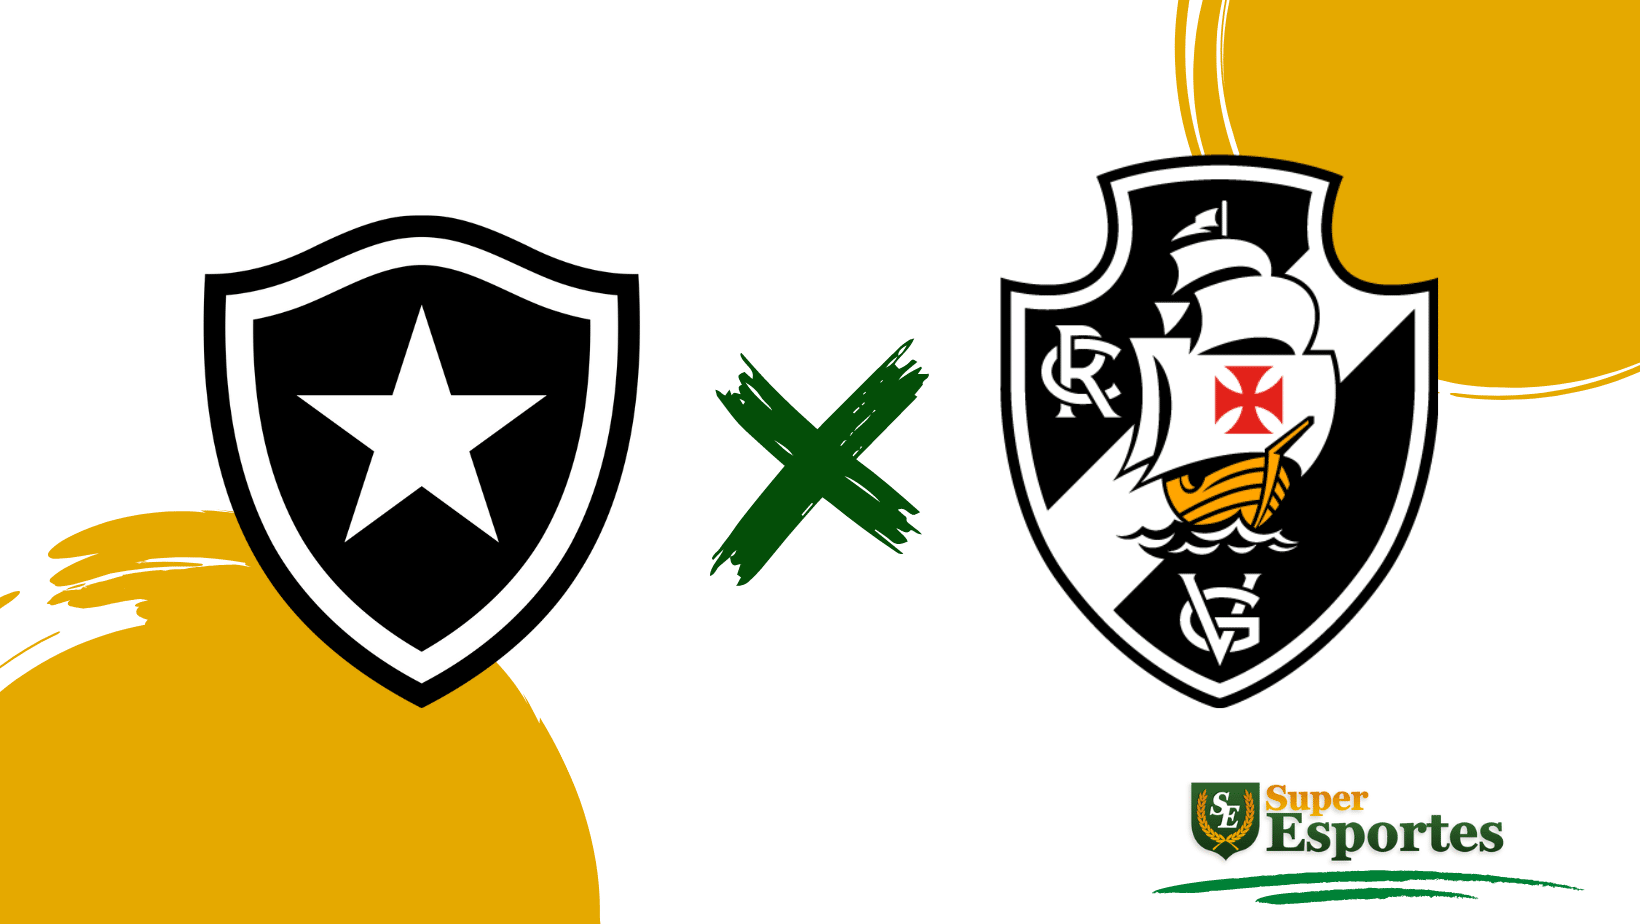 Brasileirão: como foram os últimos jogos entre Vasco e Botafogo?